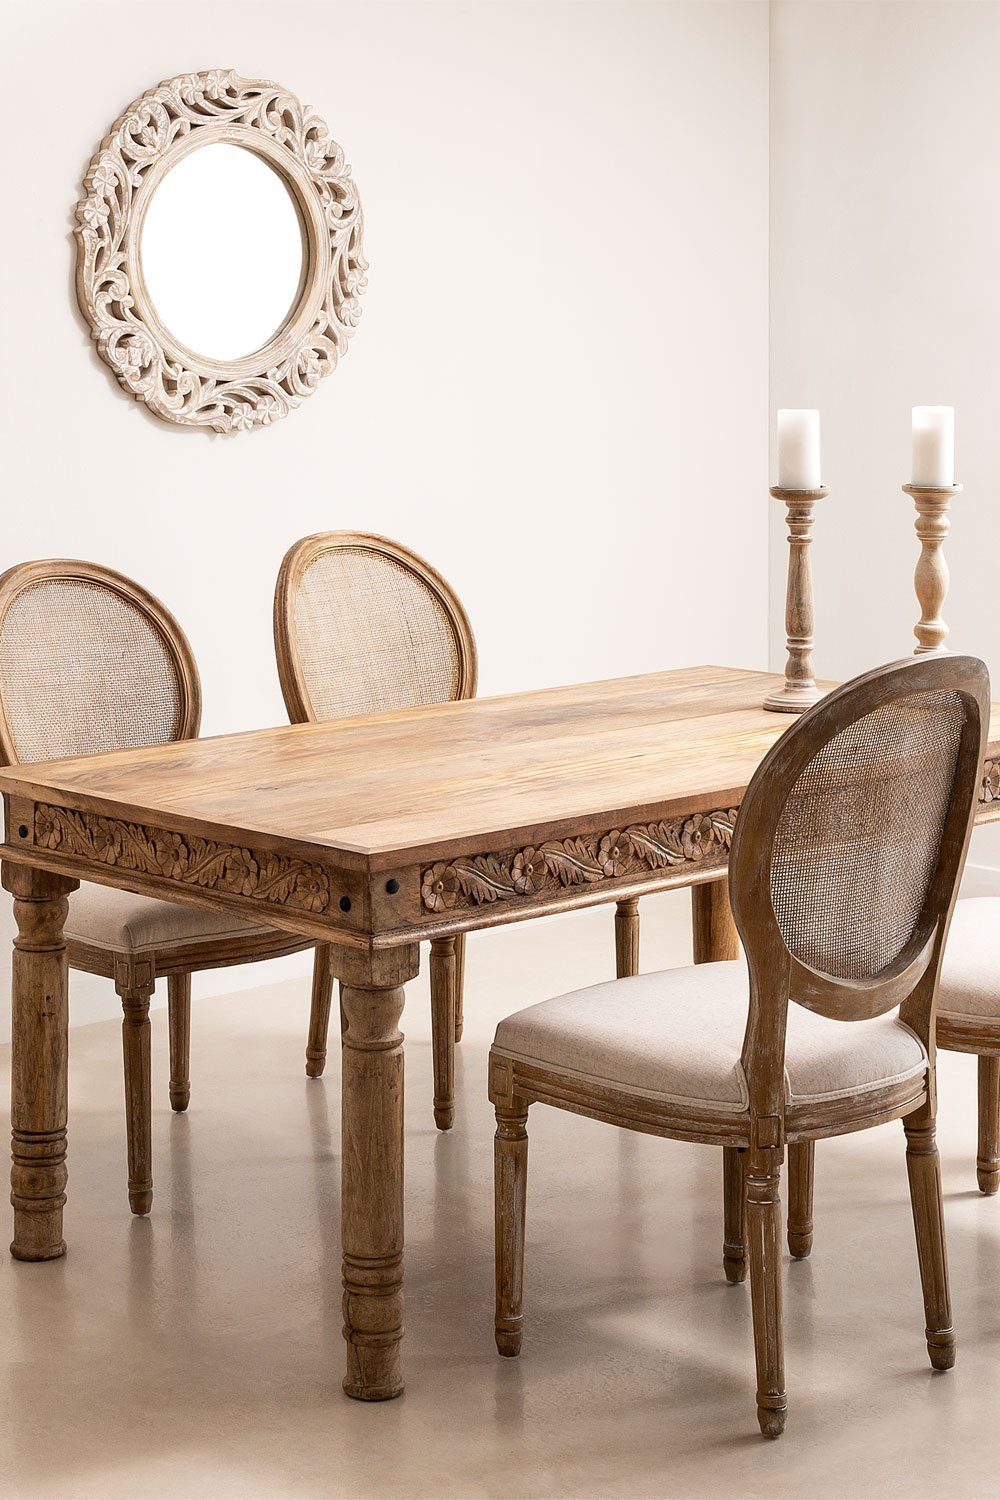 Rechthoekige mangohouten tafelset Taraz (160x90 cm) en 4 stoffen eetkamerstoelen Sunna, galerij beeld 1